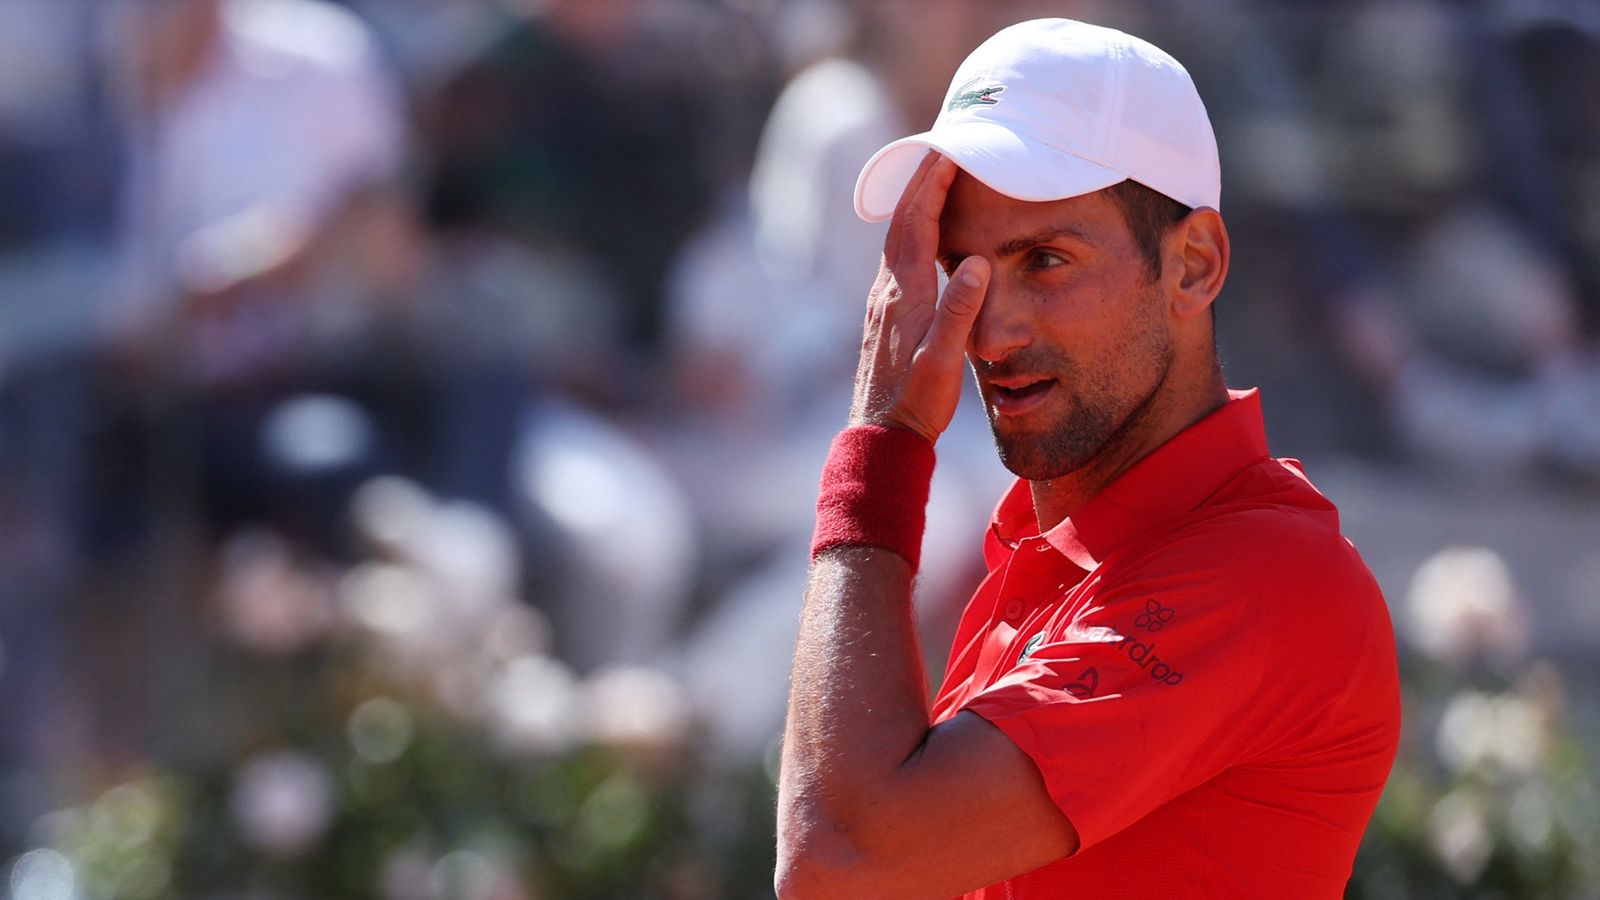 Novak Djokovic subira des examens médicaux après un coup de bouteille et une perte de choc à l’Open d’Italie |  Nouvelles du monde